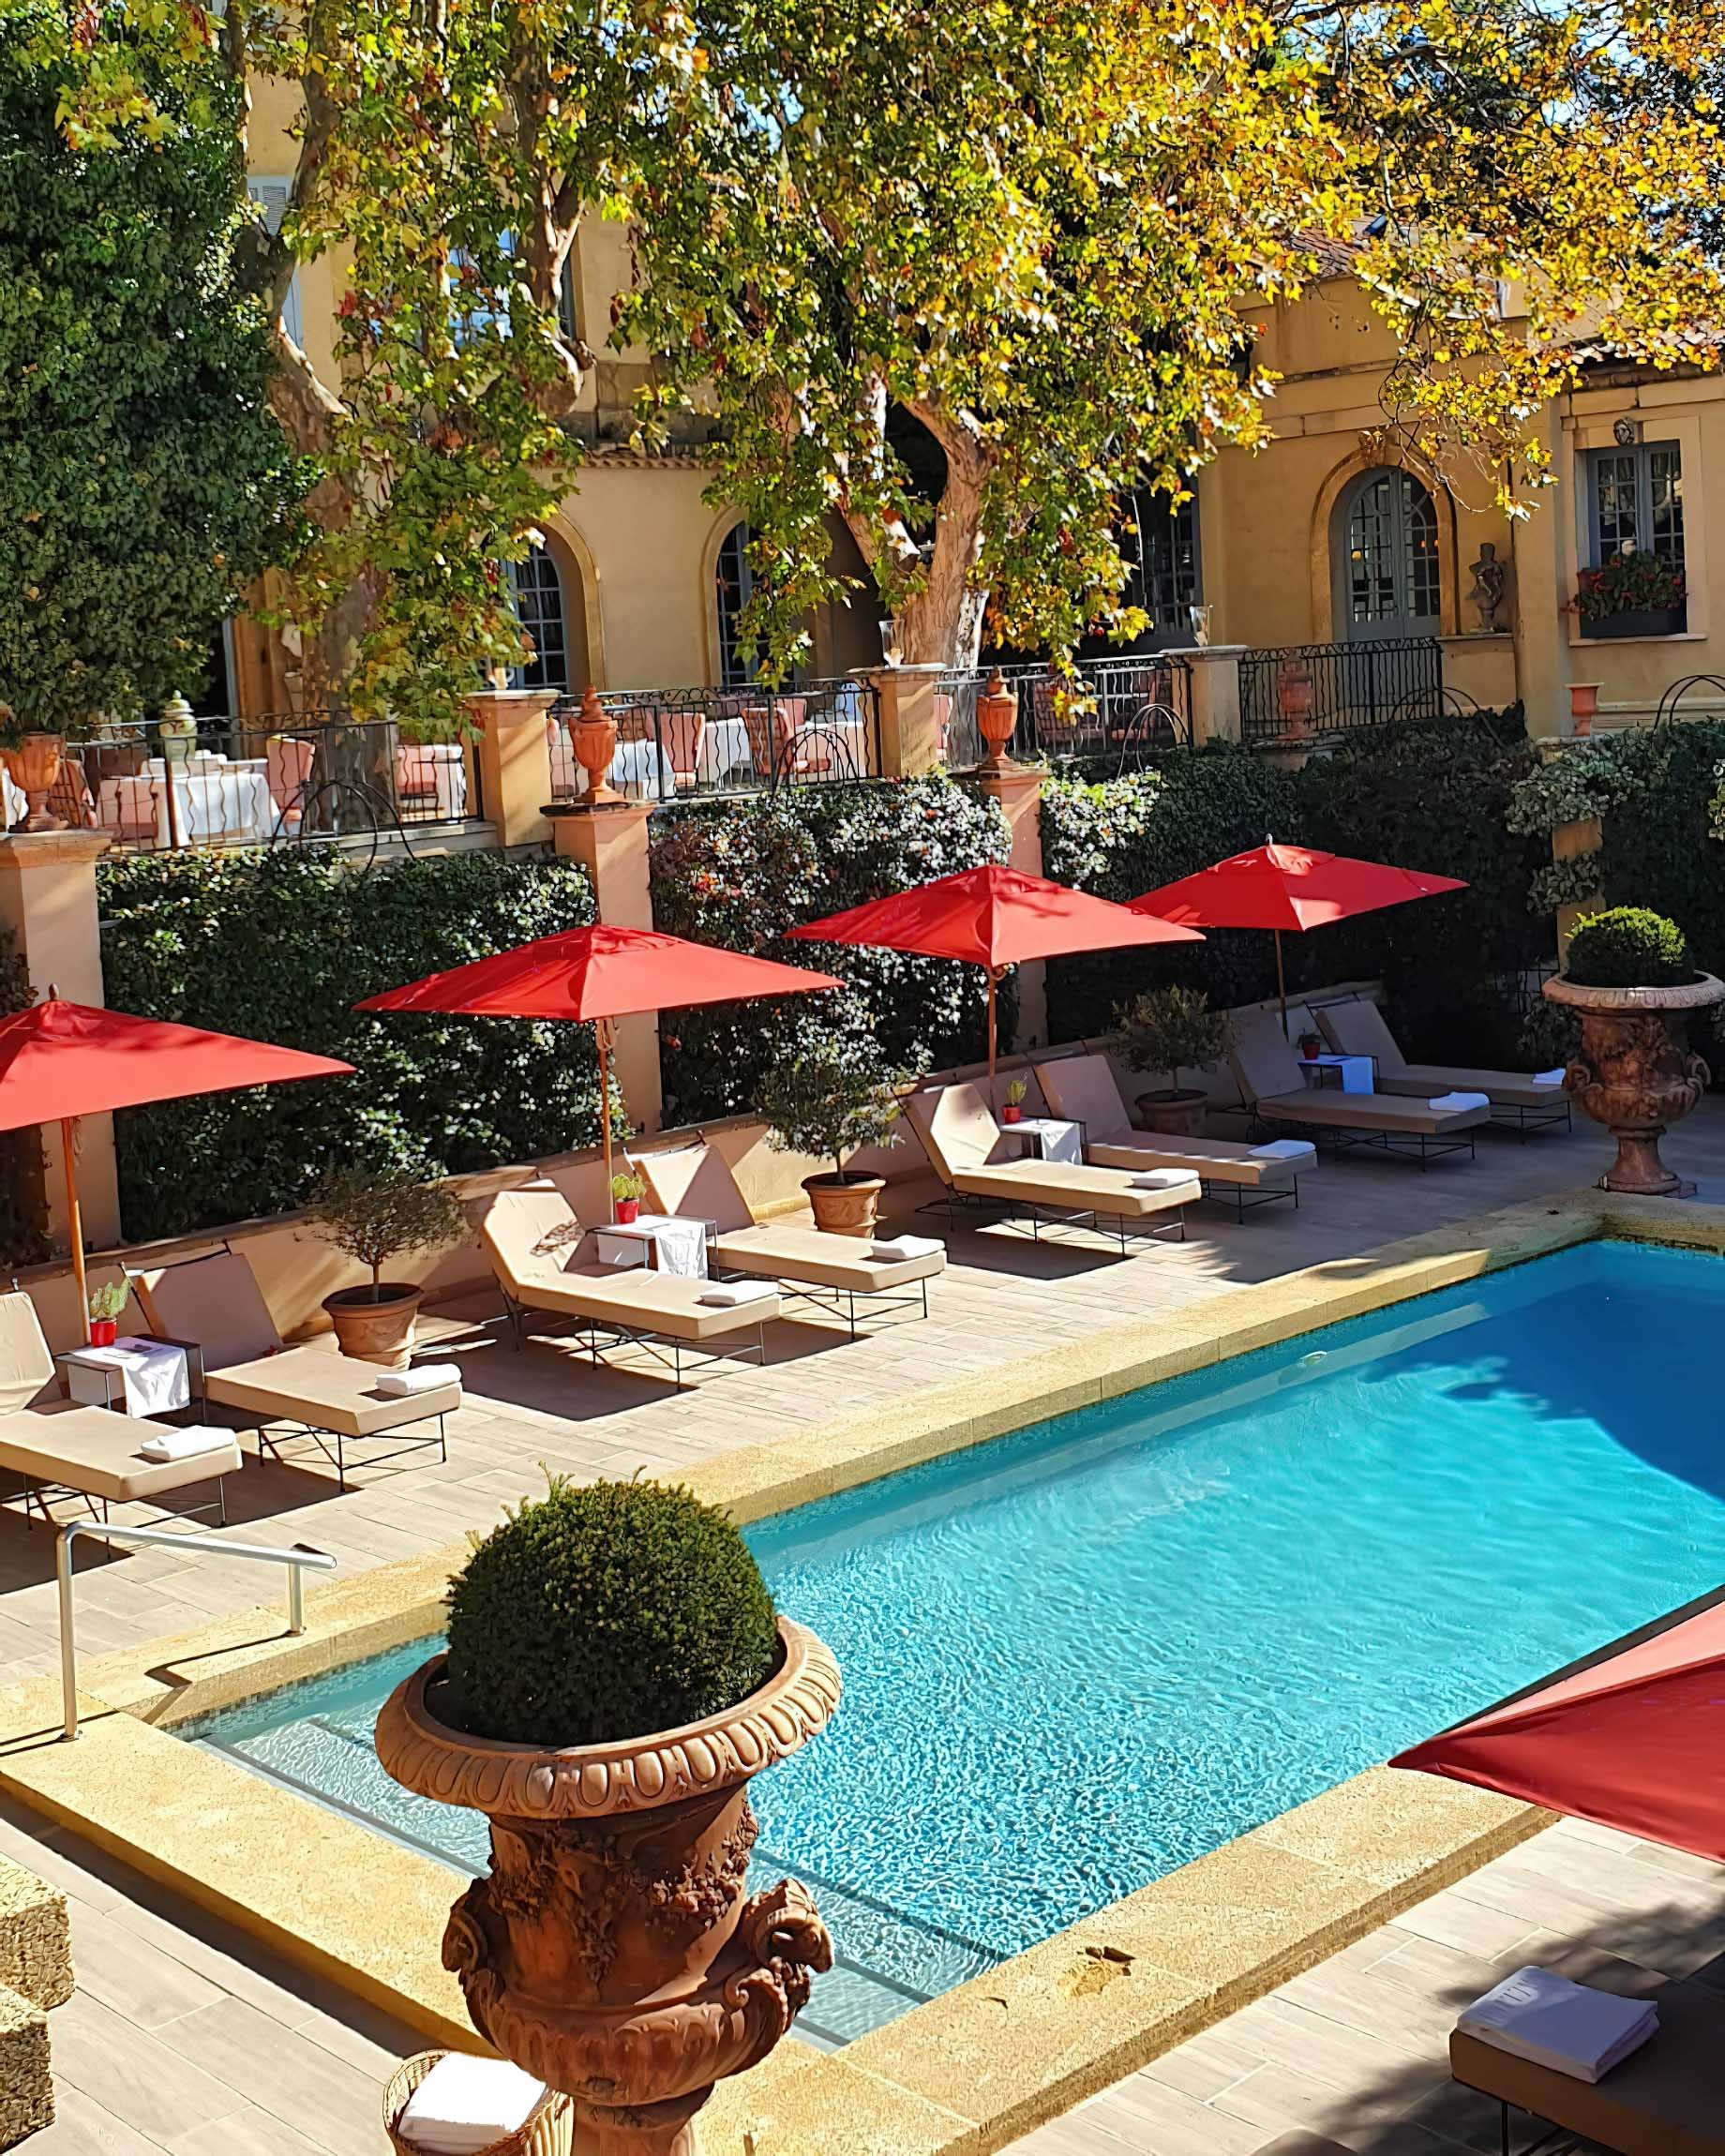 Villa Gallici Relais Châteaux Hotel – Aix-en-Provence, France – Restaurant Patio Pool View